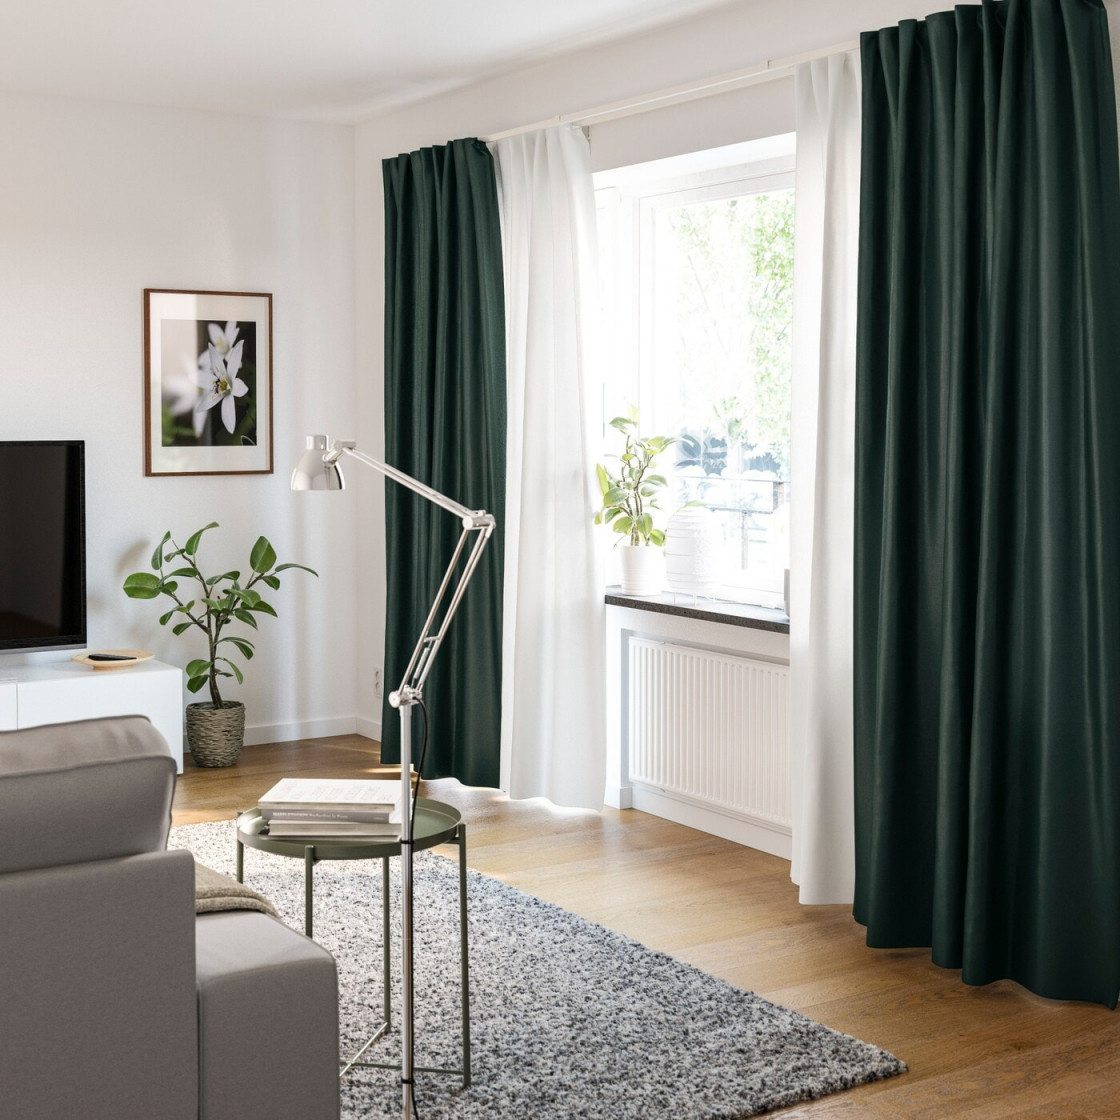 Gardinenideen Inspirationen Für Dein Zuhause  Ikea von Deko Ideen Gardinen Wohnzimmer Photo